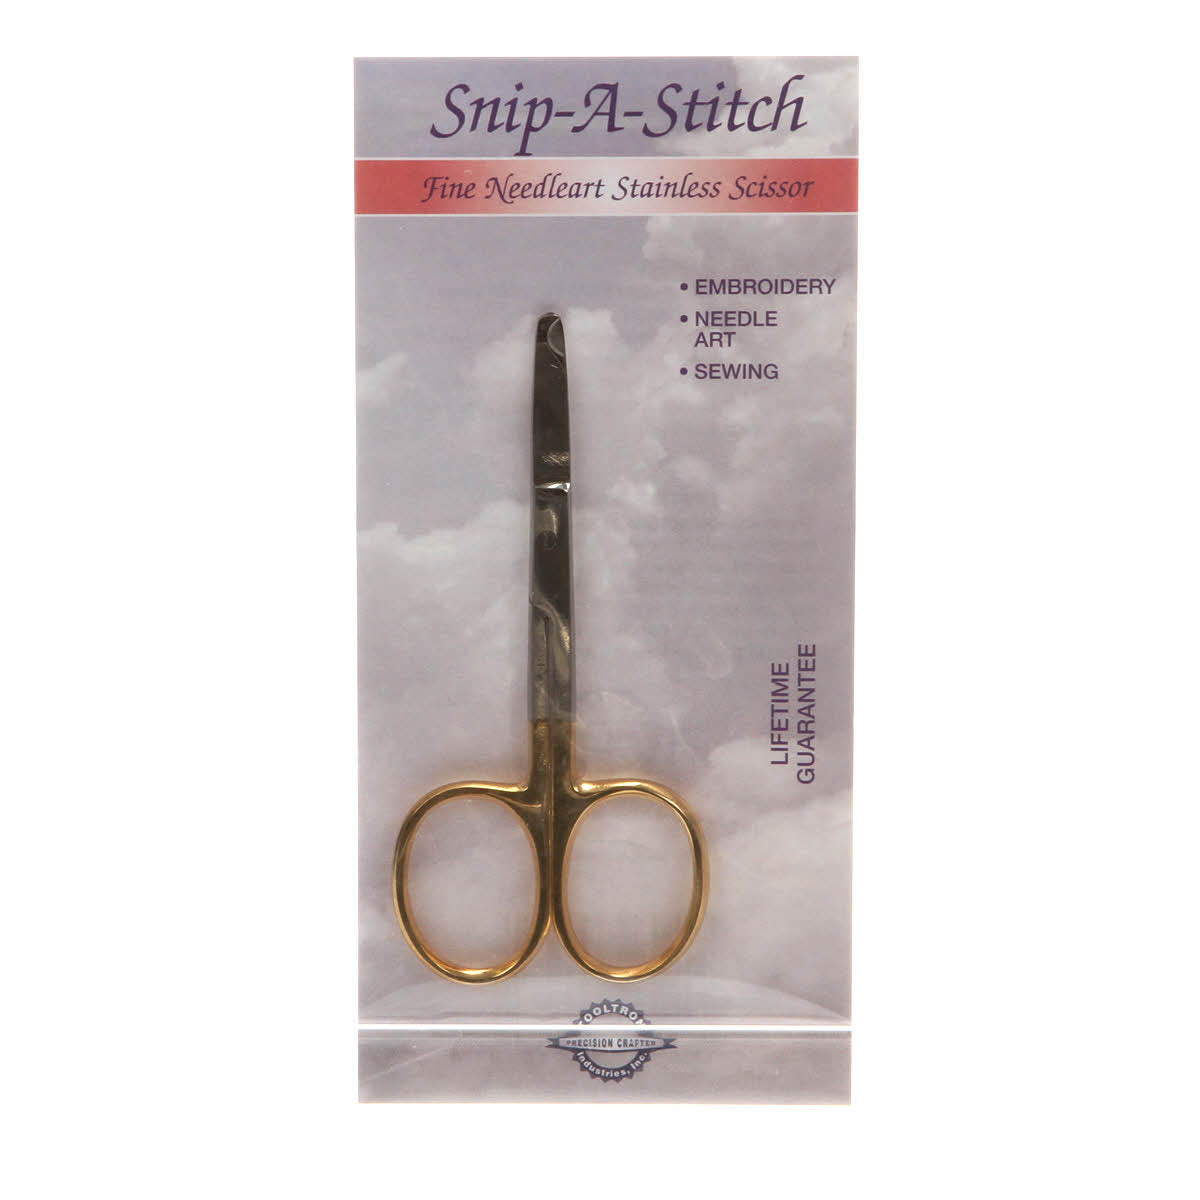 Snip-A-Stitch Scissor - Threads, Embroidery, etc - 3 1/2in